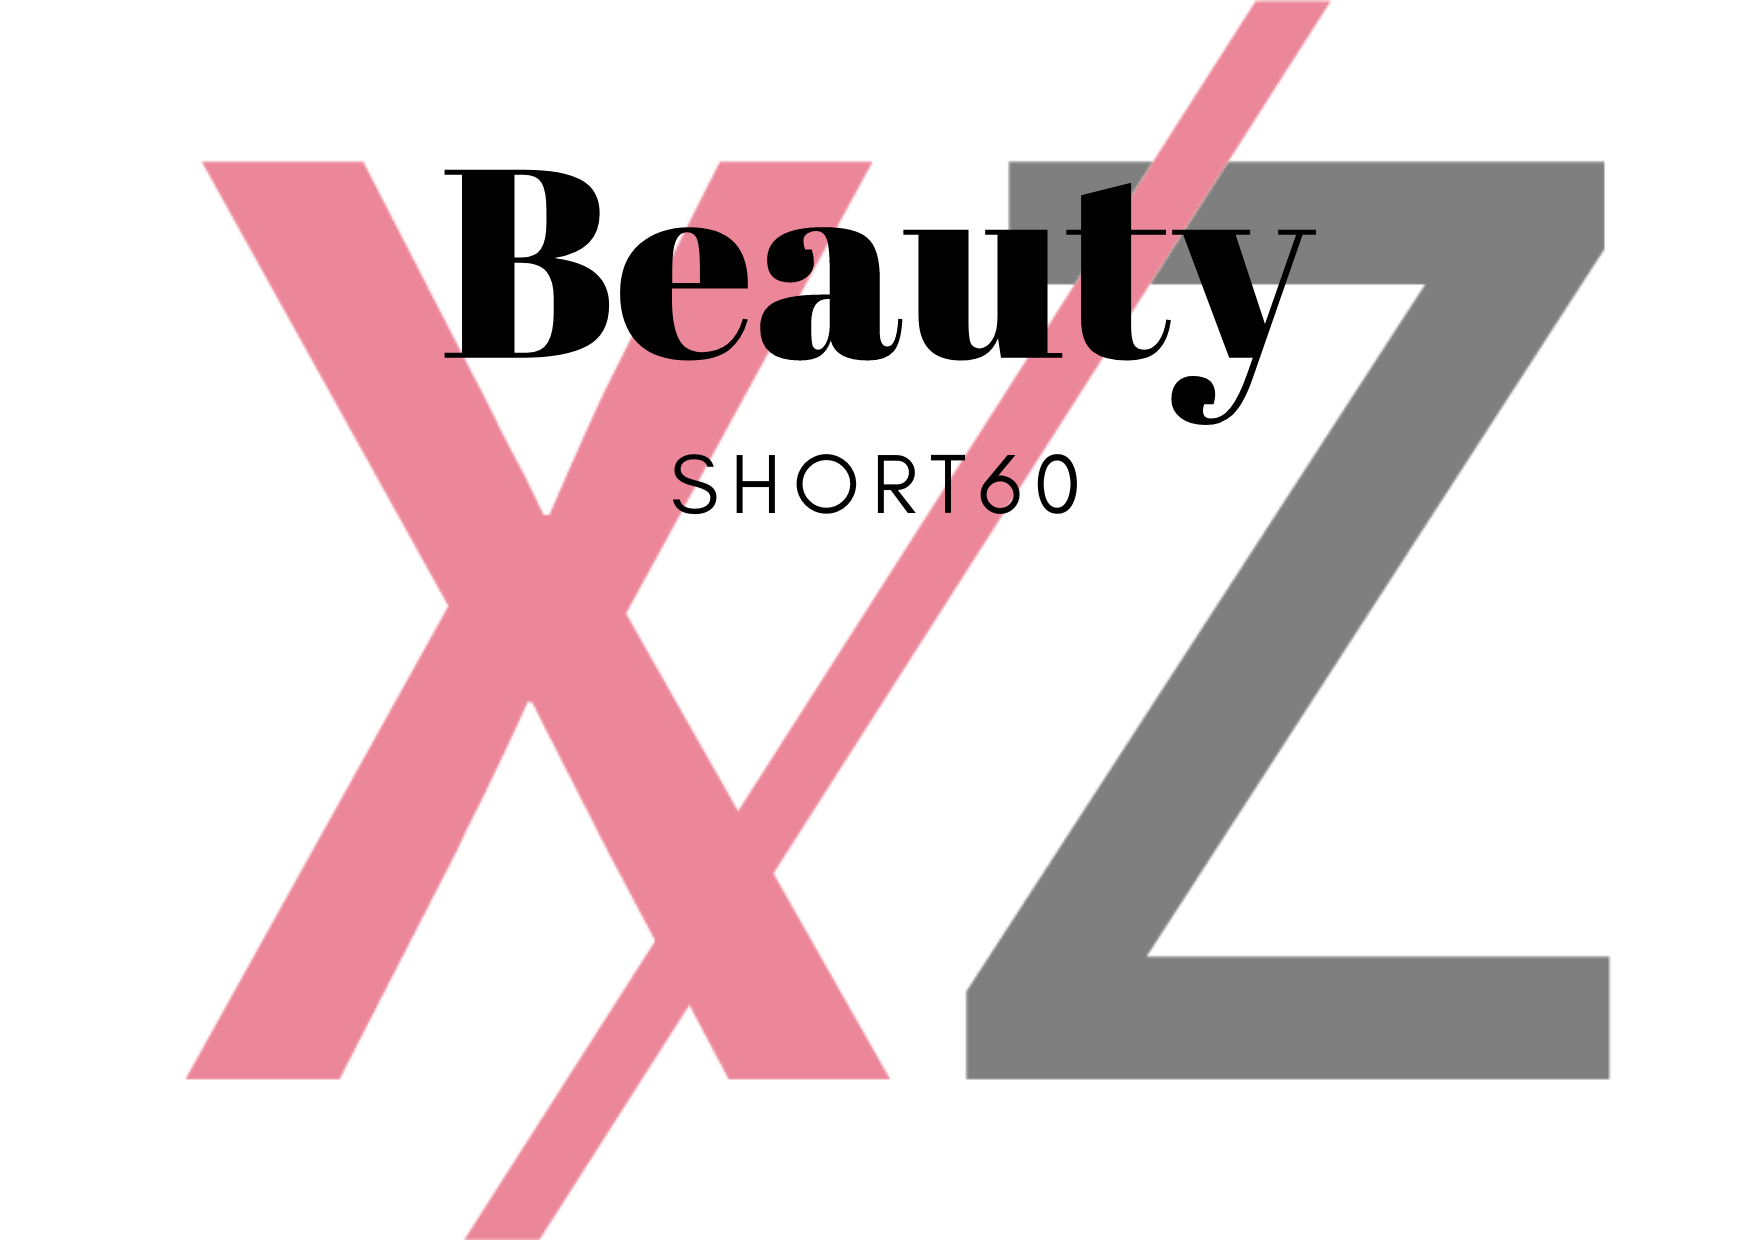 XZパーソナルジム&鍼灸ボディケア 〈Beauty〉ショートコース60分のメニュー画像